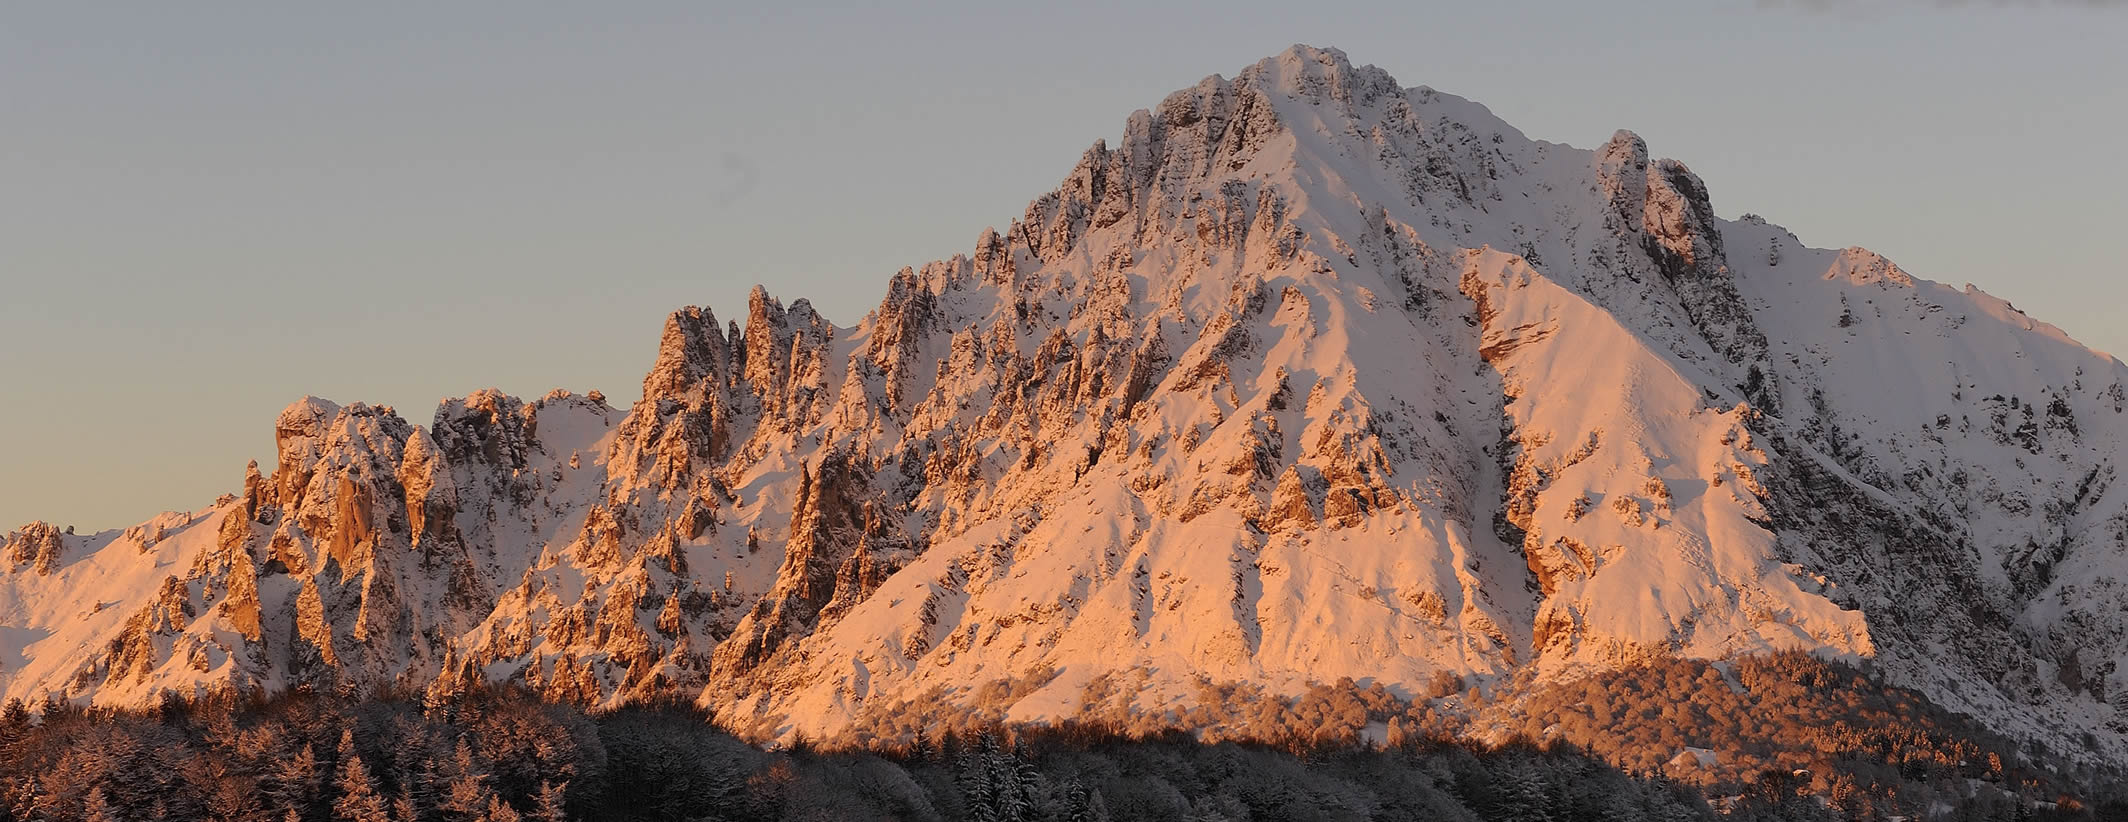 Profilo della Grignetta all'alba dalla vetta del Monte Coltignone - foto di Mauro Lanfranchi